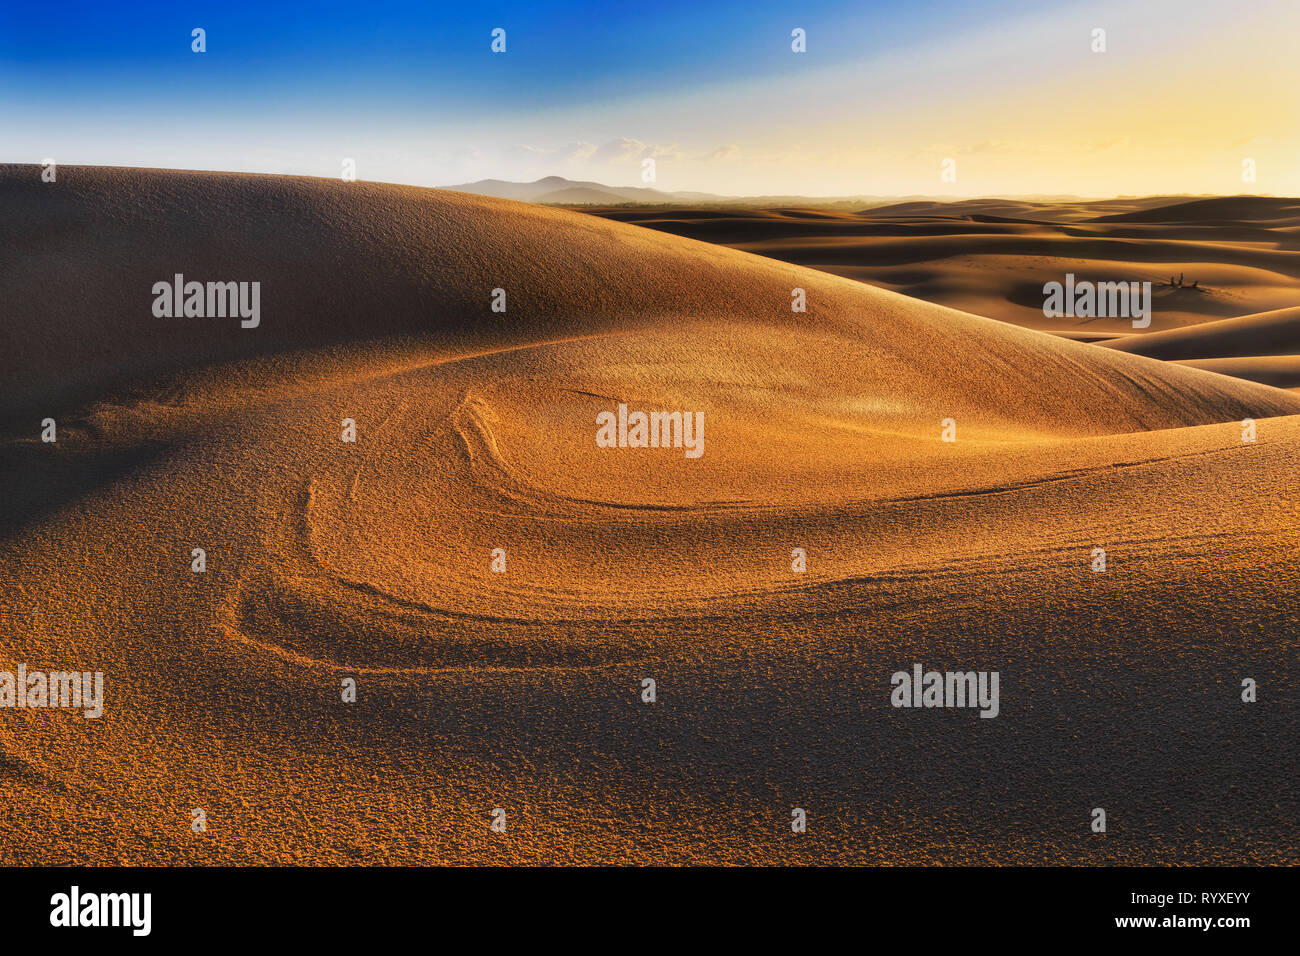 Sun superficie illuminata di dune di sabbia di sunrise con il paesaggio incontaminato e la superficie del deserto sulla costa del Pacifico in Australia in Stockton Beach. Foto Stock